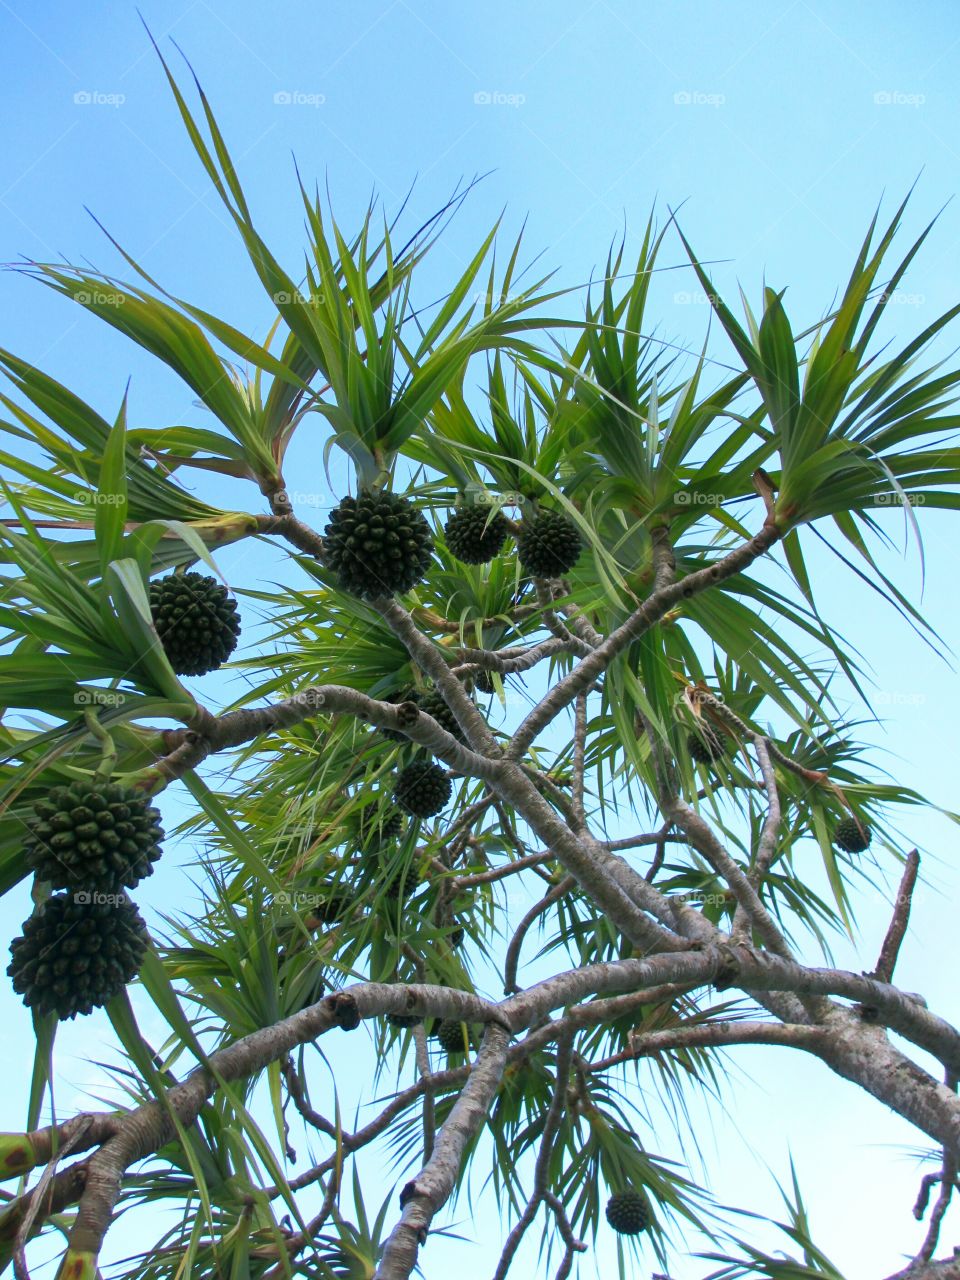 Pandanus pine with fruit. Pandanus or Screw Pine with fruit